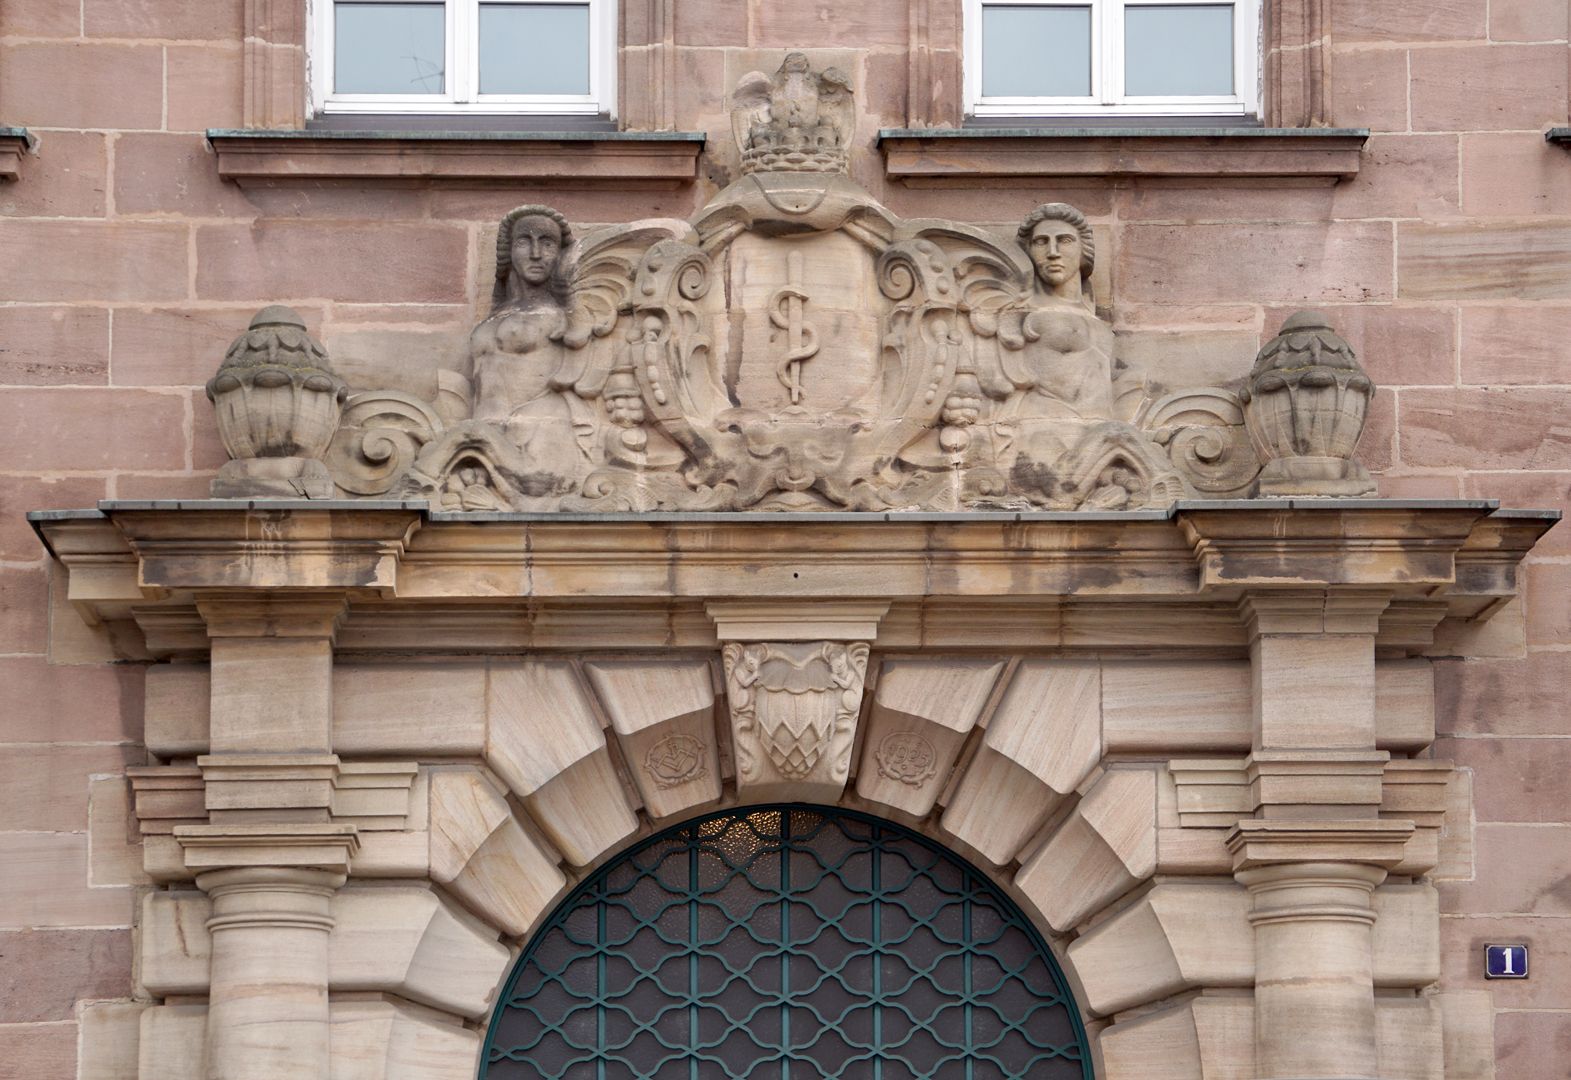 Fassadenschmuck an der ehemaligen AOK / Grillenberger Straße Bekrönung des Haupteinganges, der Äskulapstab als Sinnbild der Medizin wird von zwei Sphingen gerahmt